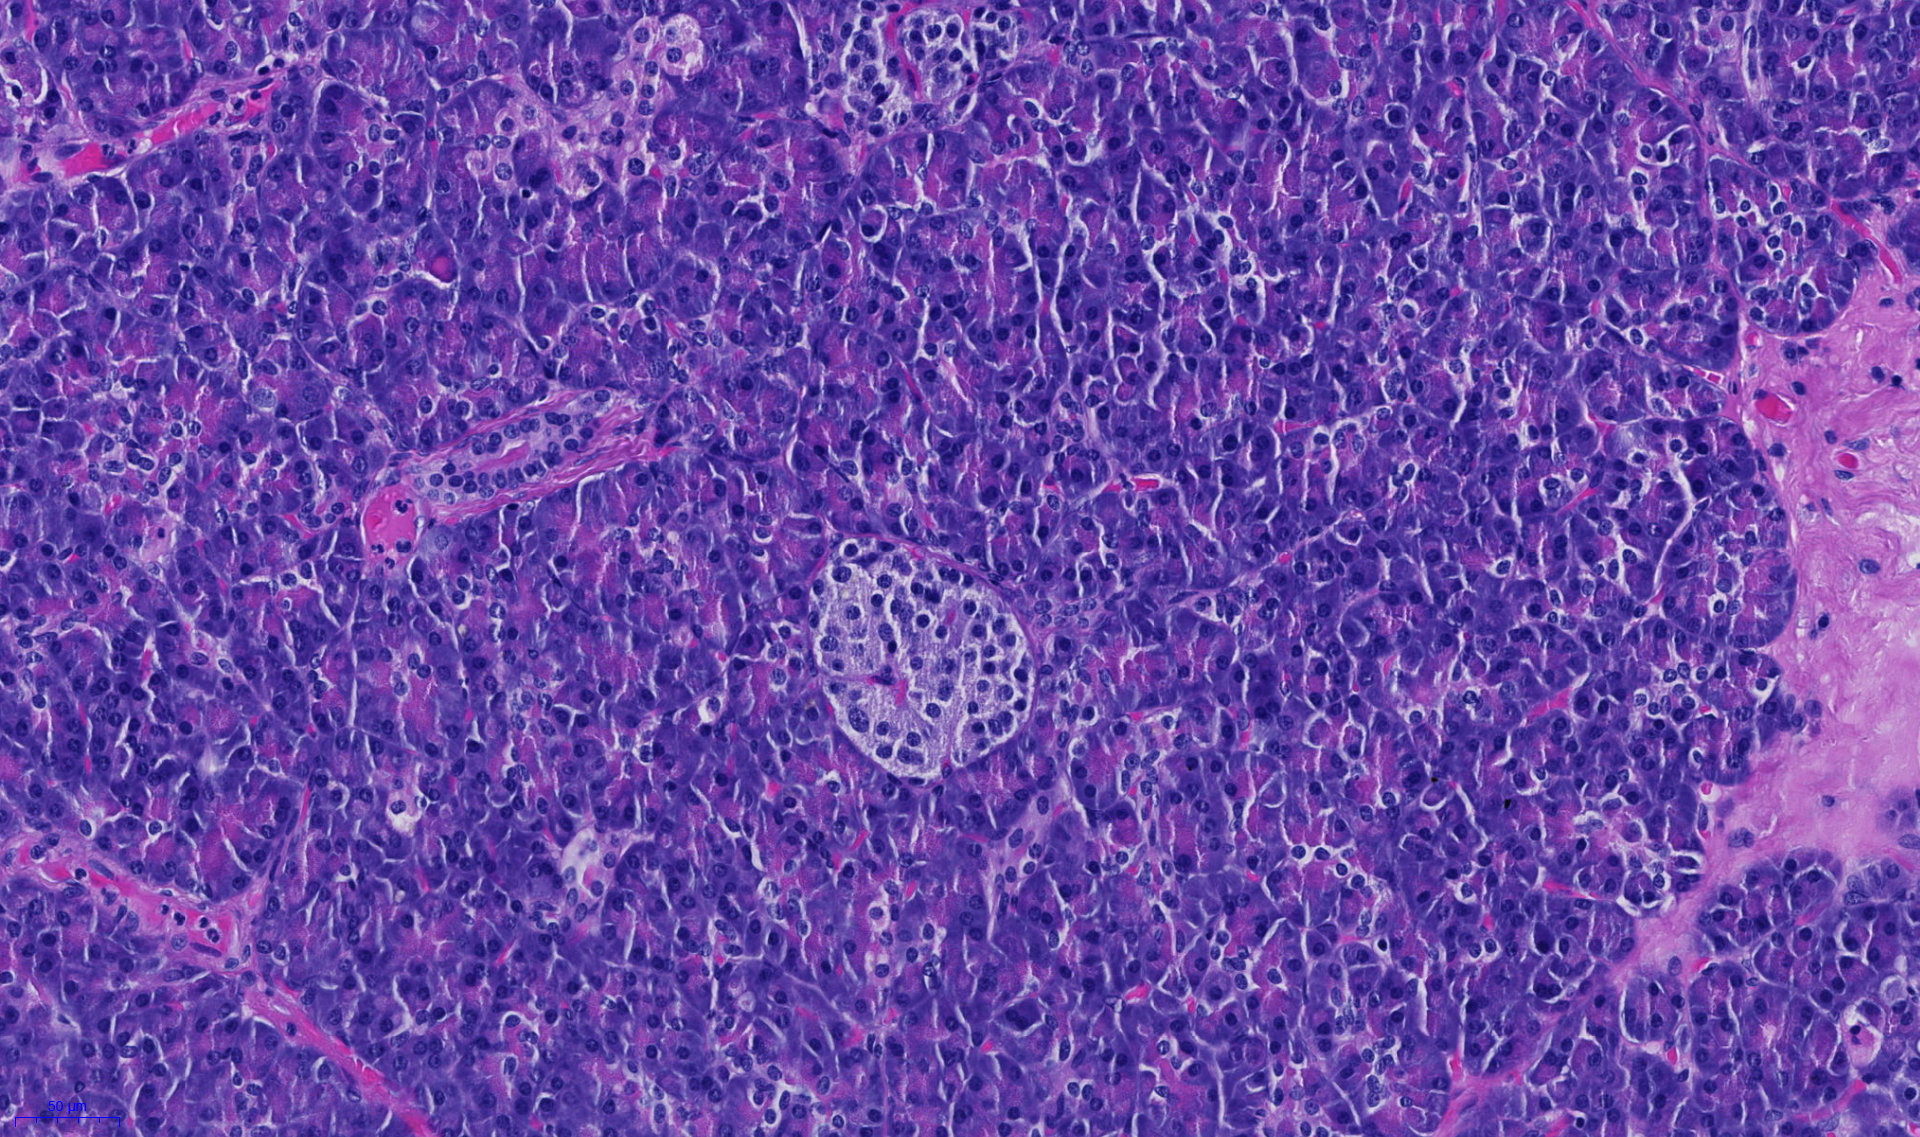 Zellen der Bauchspeicheldrüse, die Insulin produzieren (Mitte). Weisse Blutzellen, die diese schädigen und damit Diabetes auslösen, können auch autoimmune Krankheiten im Darm verursachen. © Universität Bern/Inselspital.